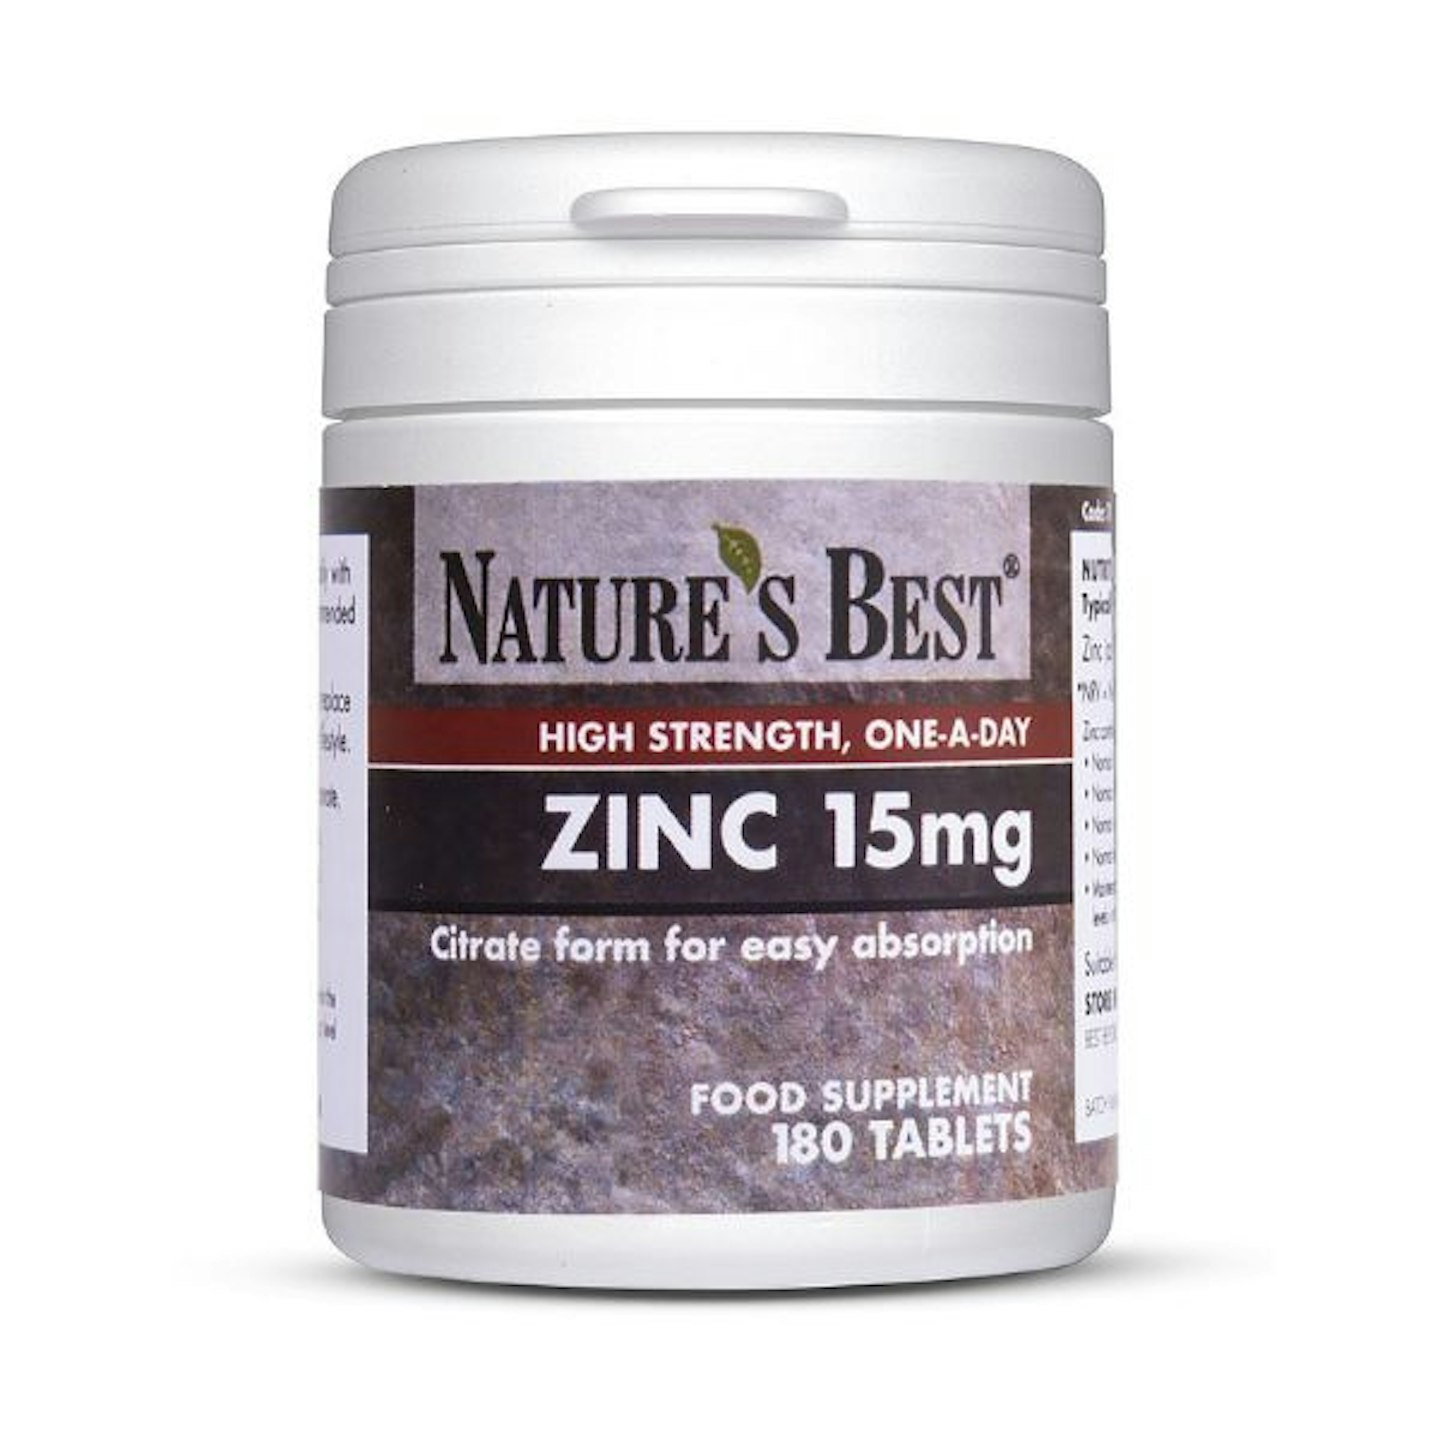 Nature's Best Zinc Supplements 